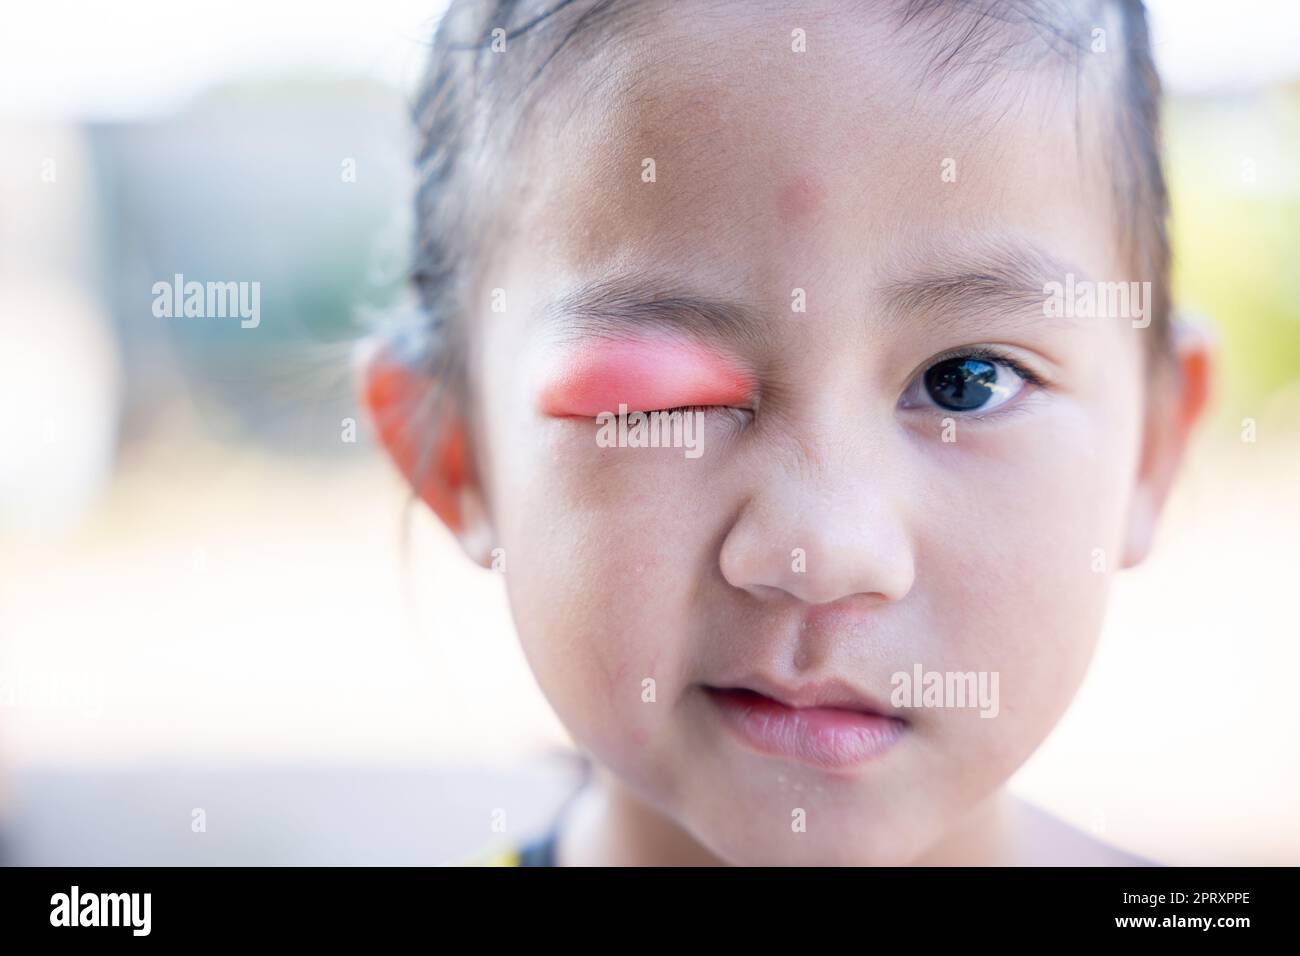 Augenkrankheiten des Sties. Geschlossenes asiatisches Kind kleines Mädchen Auge mit sty, Augenlid Abszess ophthalmic hordeolum Stockfoto